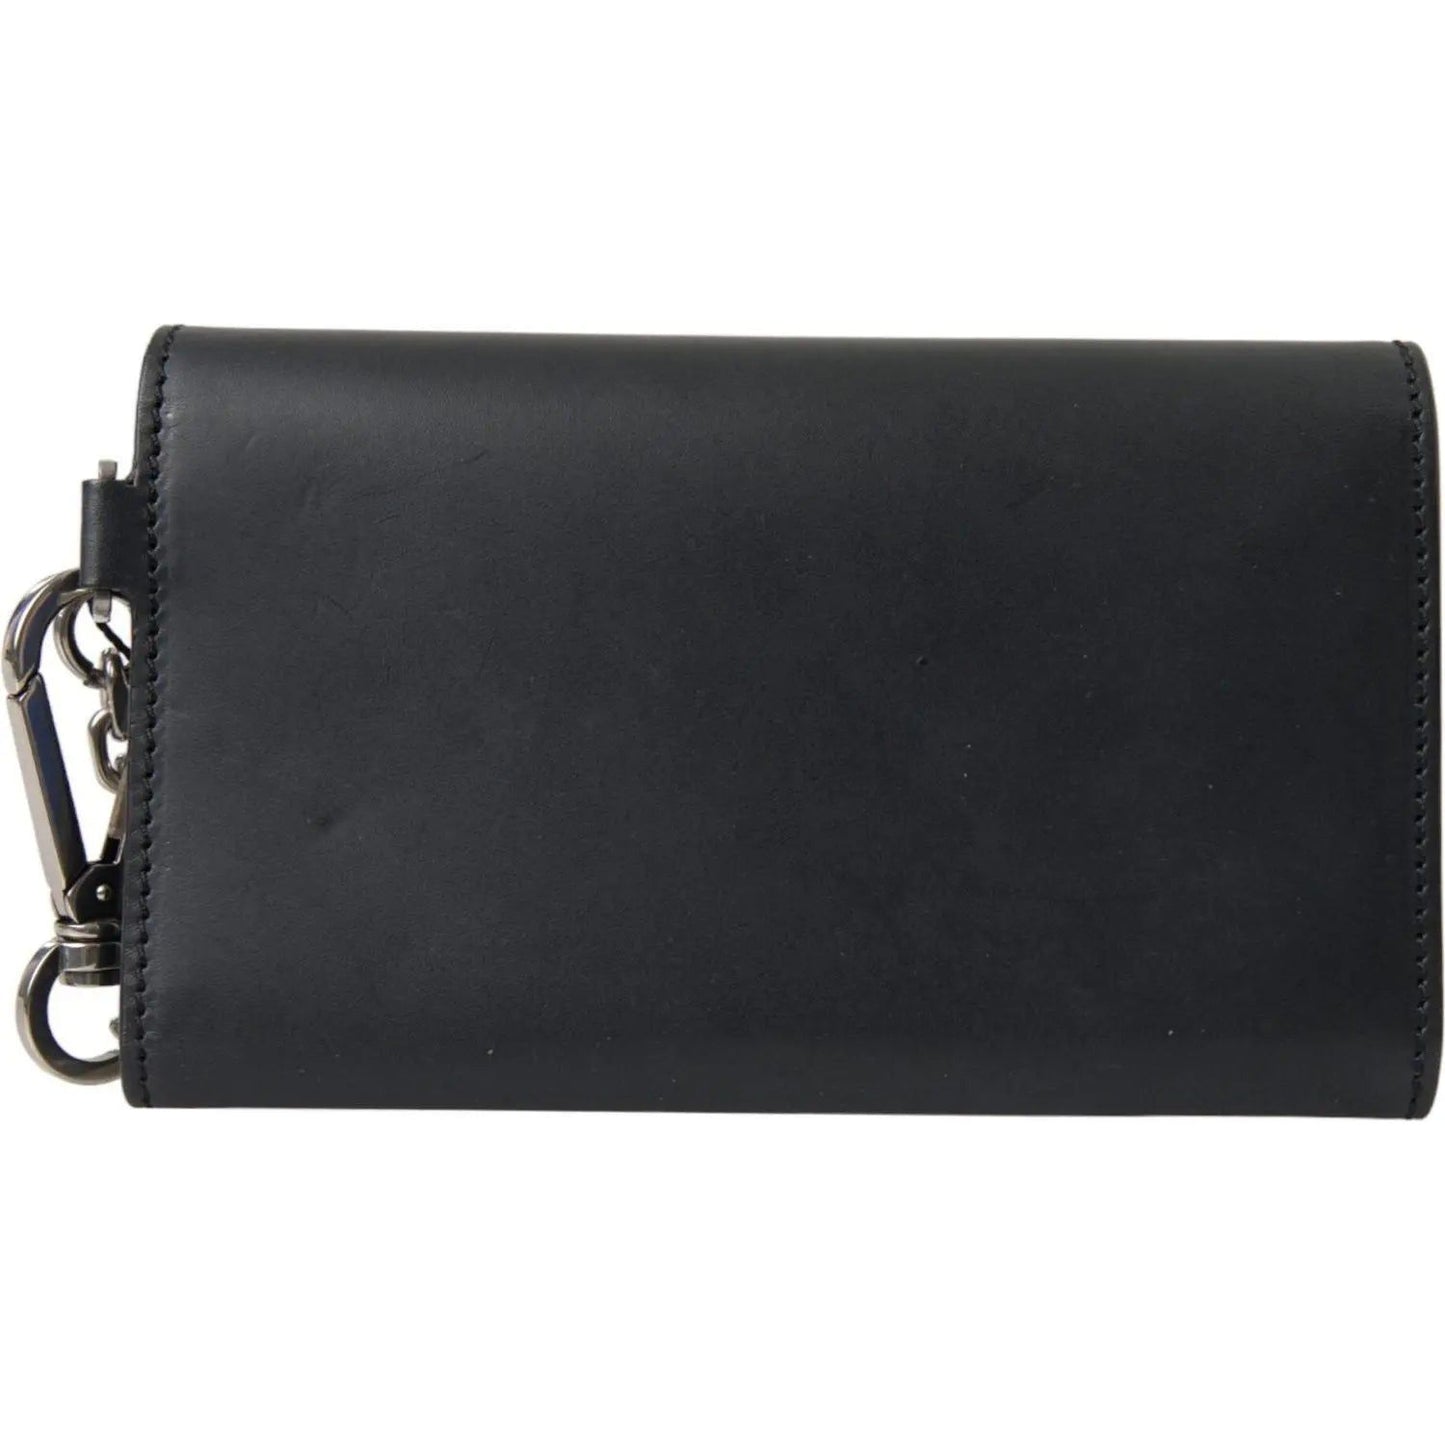 Dolce & Gabbana | Elegant Black Leather Shoulder Bag| McRichard Designer Brands   